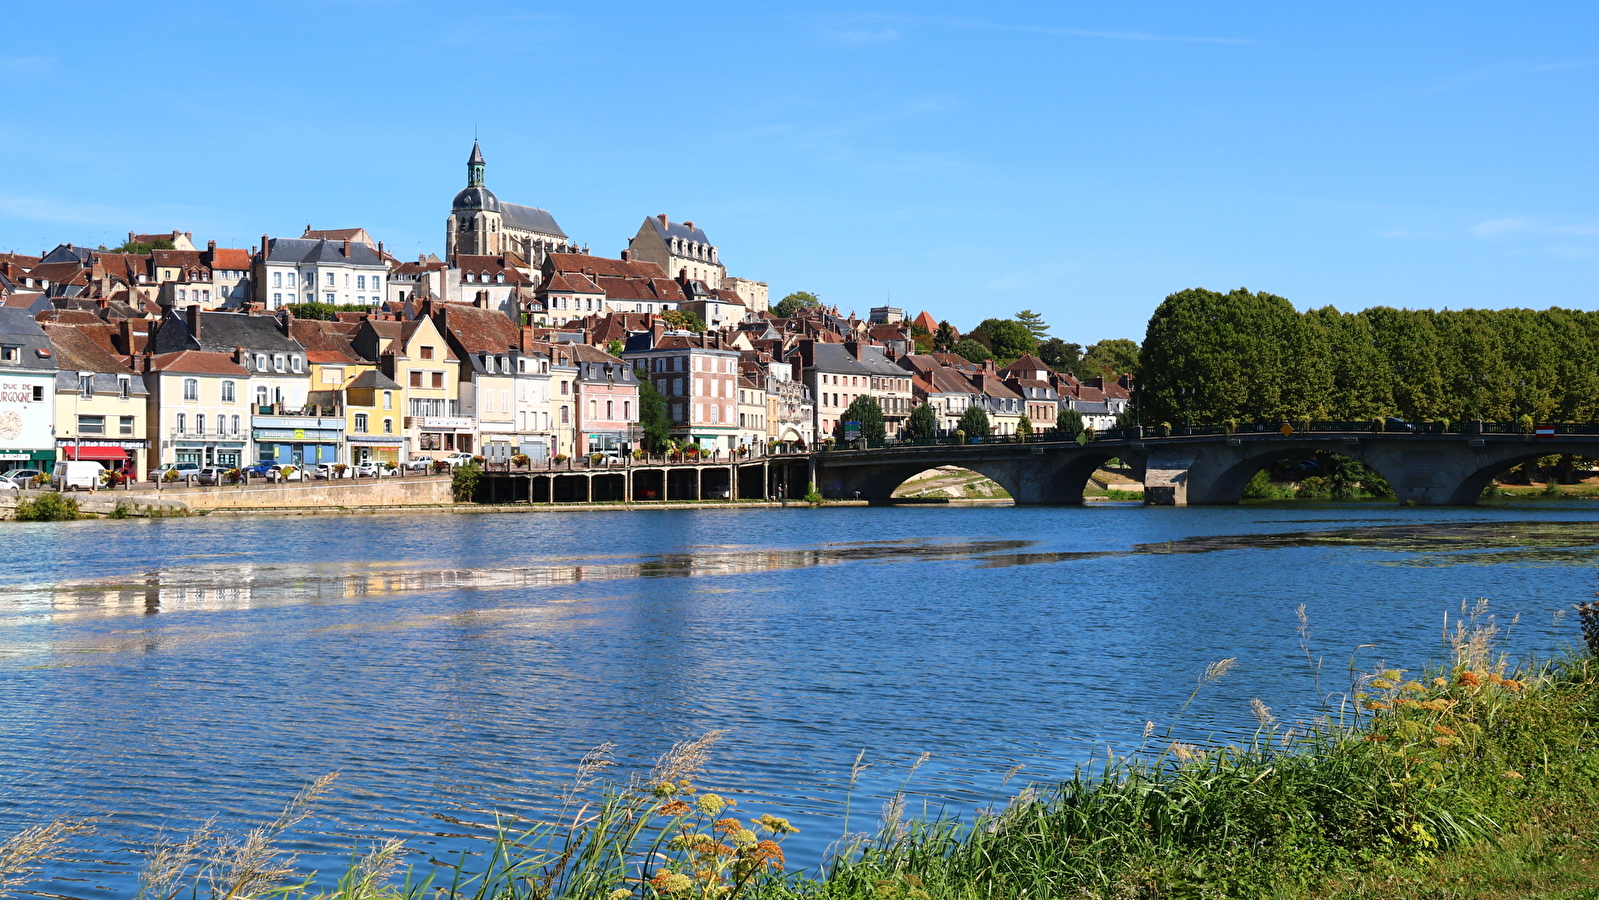 Que dirais-tu de découvrir un village de l’Yonne et ses environs tout en t’amusant ?